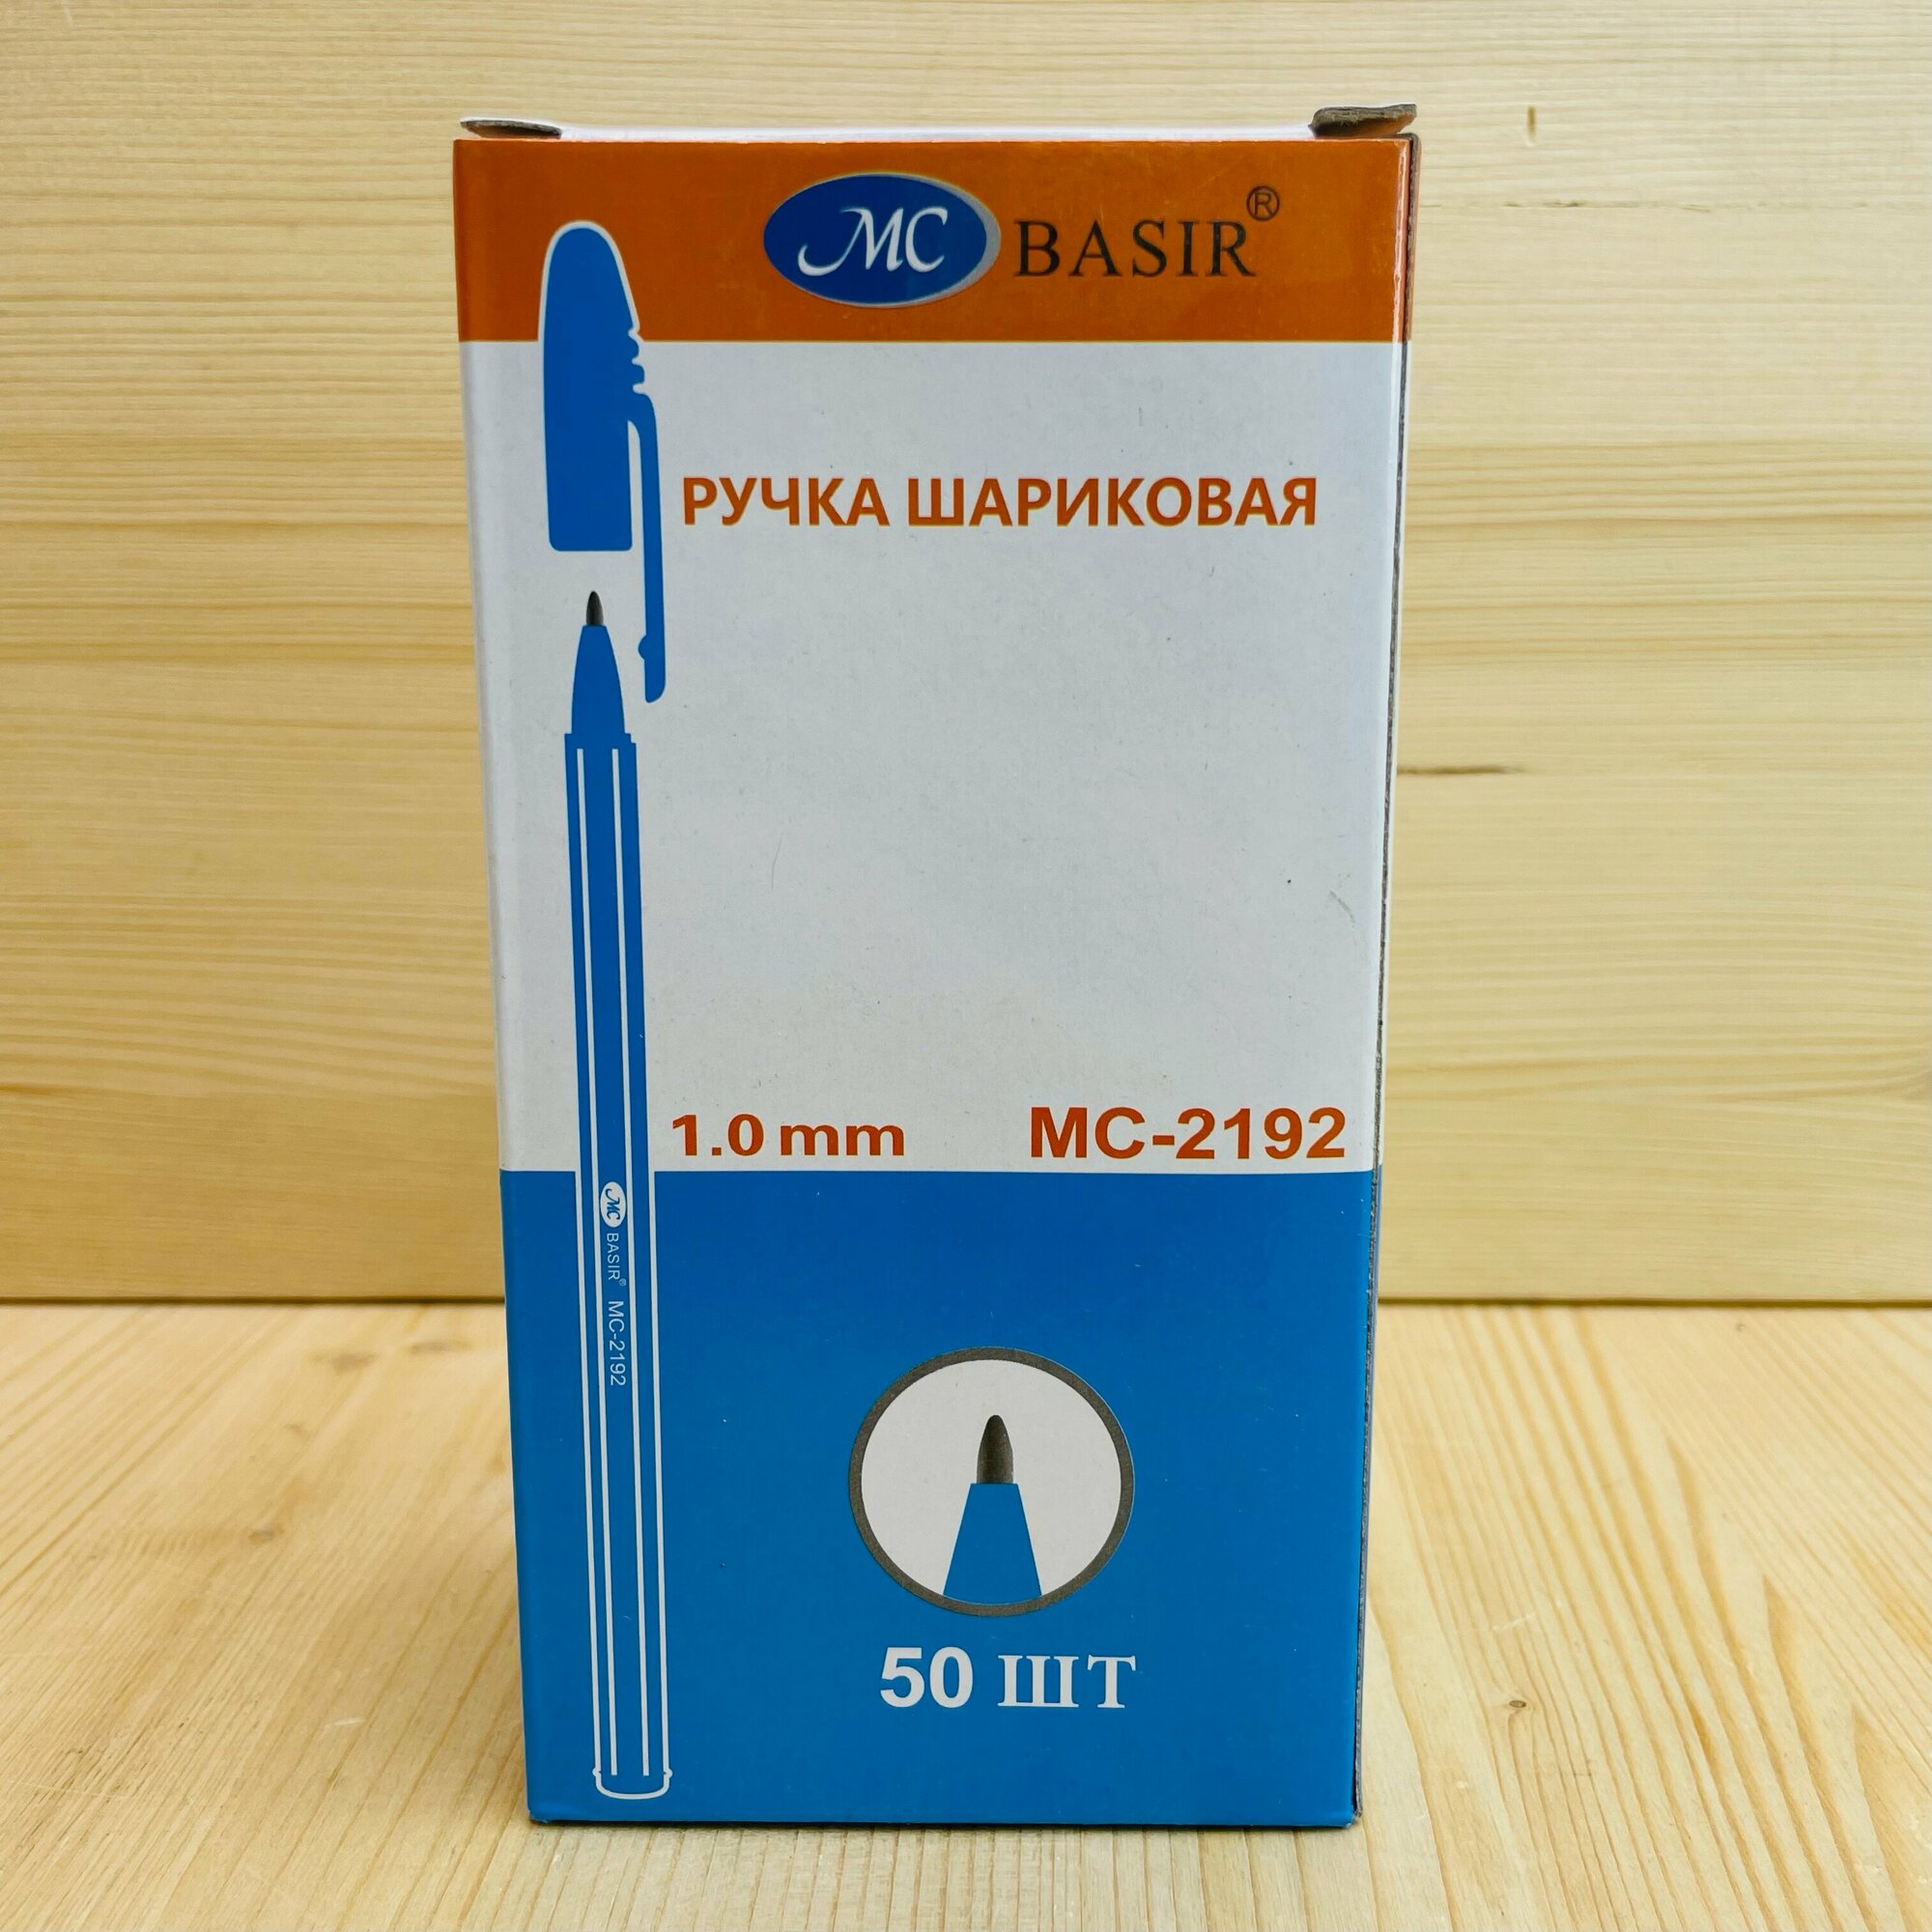 Ручки шариковые синие 50 шт "BASIR" MC-2192 1.0 mm